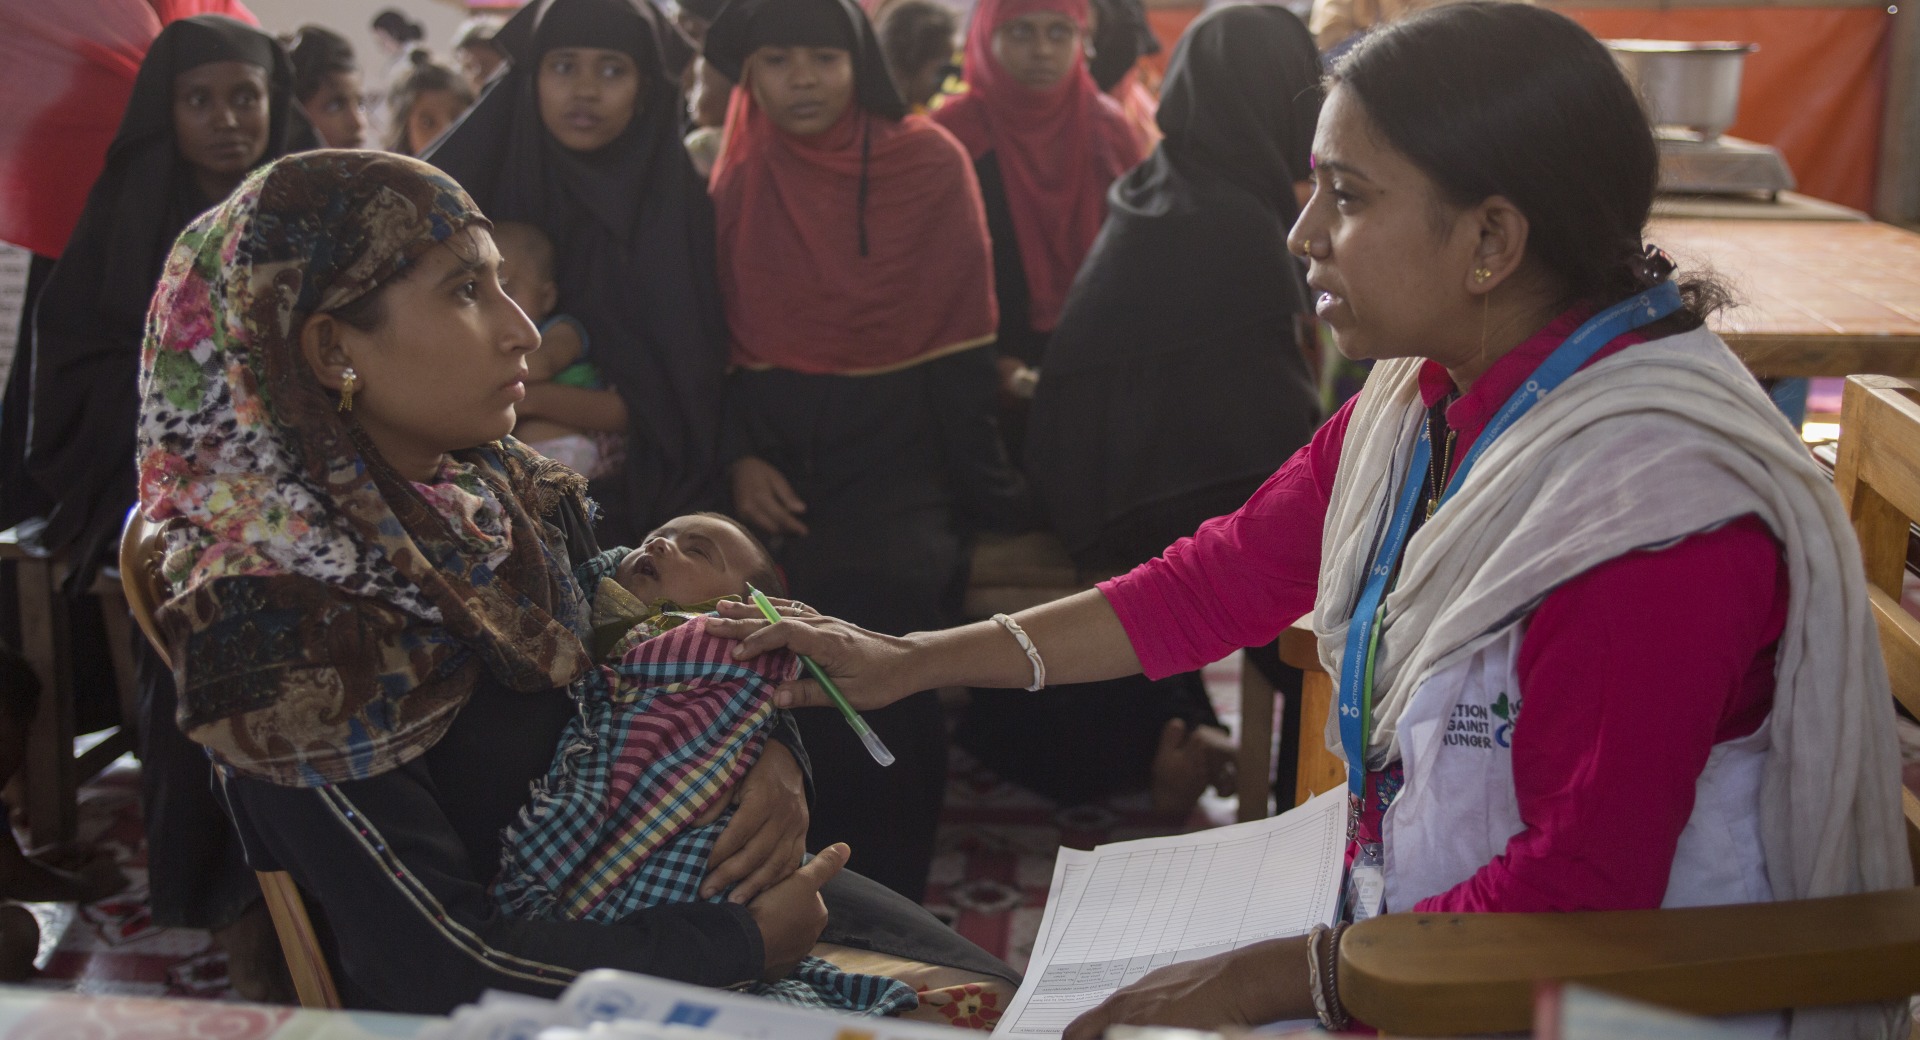 Shaki Rani Bose, responsable de l'éducation à la santé, s'entretient avec une jeune mère, Hosne Ara, et son bébé, entourée de femmes Rohinga qui attendent patiemment d'être examinées dans une clinique d'Action contre la faim pour les femmes enceintes et les mères allaitantes.